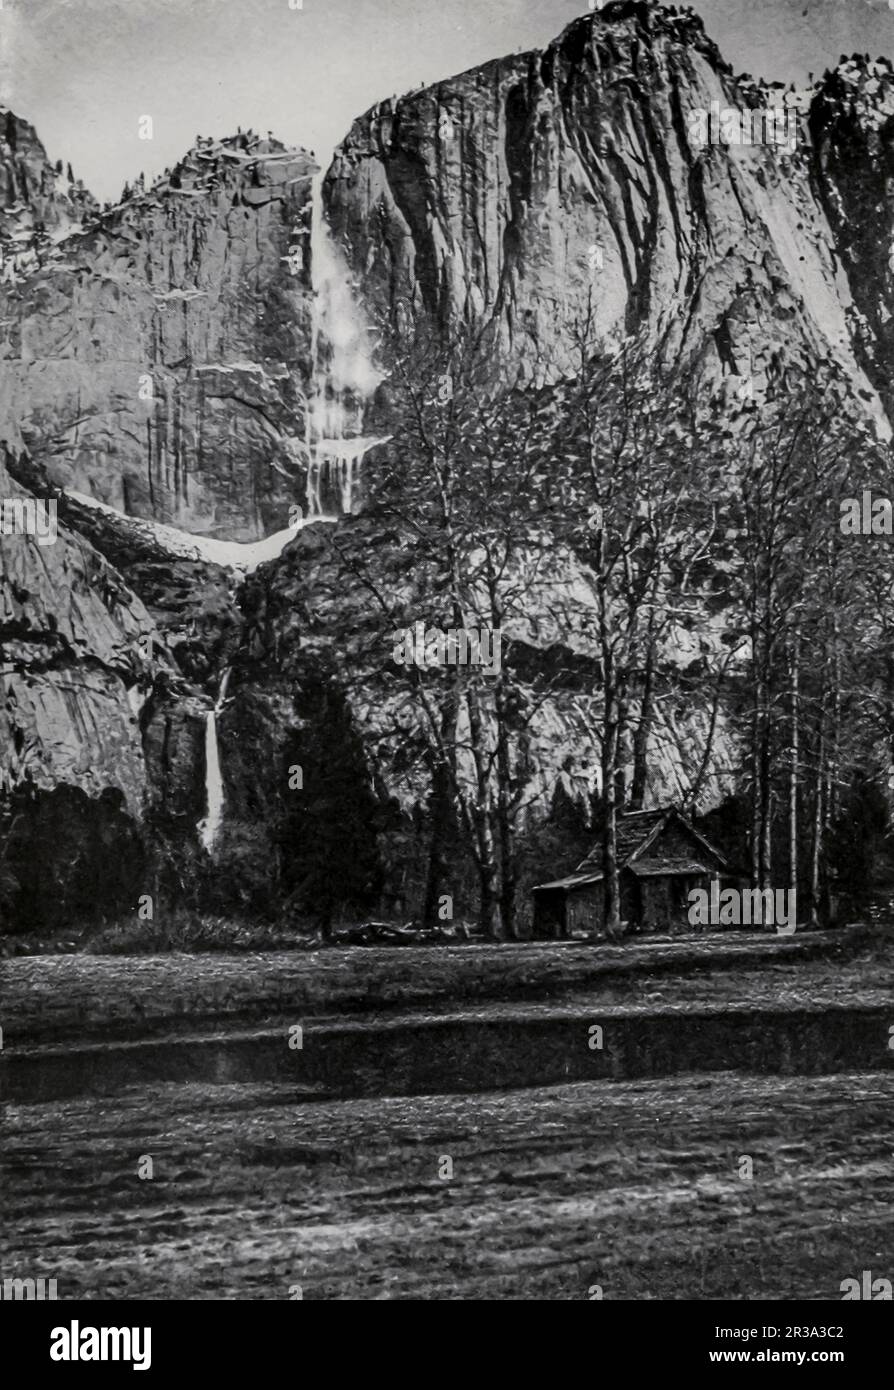 Das Schwarzweiß-Foto der Yosemite Falls von Clifton Johnson aus dem Buch Highways and Byways of the Pacific Coast dieser Band enthält Kapitel über charakteristische, malerische und historisch attraktive Regionen in den Bundesstaaten Kalifornien, Oregon, Washington, Idaho, Nevada, Und Arizona und ein Kapitel über den Yosemite-Nationalpark. Veröffentlichungsdatum 1913 Publisher New York, The Macmillan Company; Stockfoto